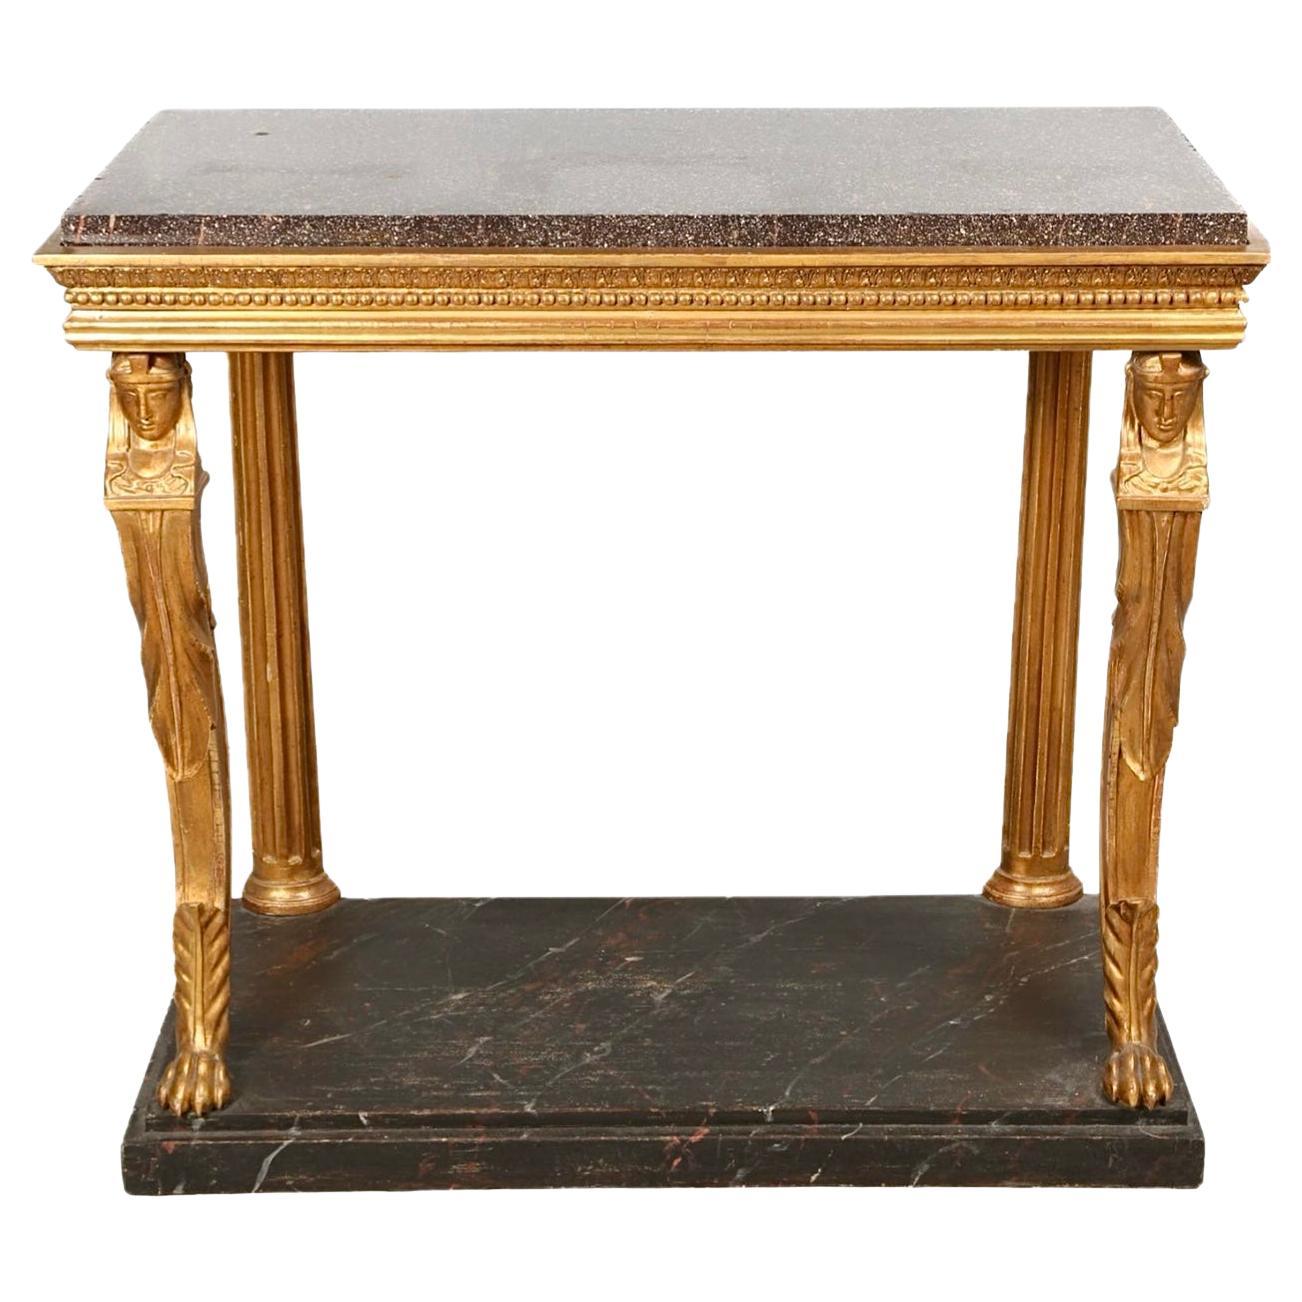 Table console néoclassique suédoise en bois doré avec plateau en porphyre, début du 19ème siècle